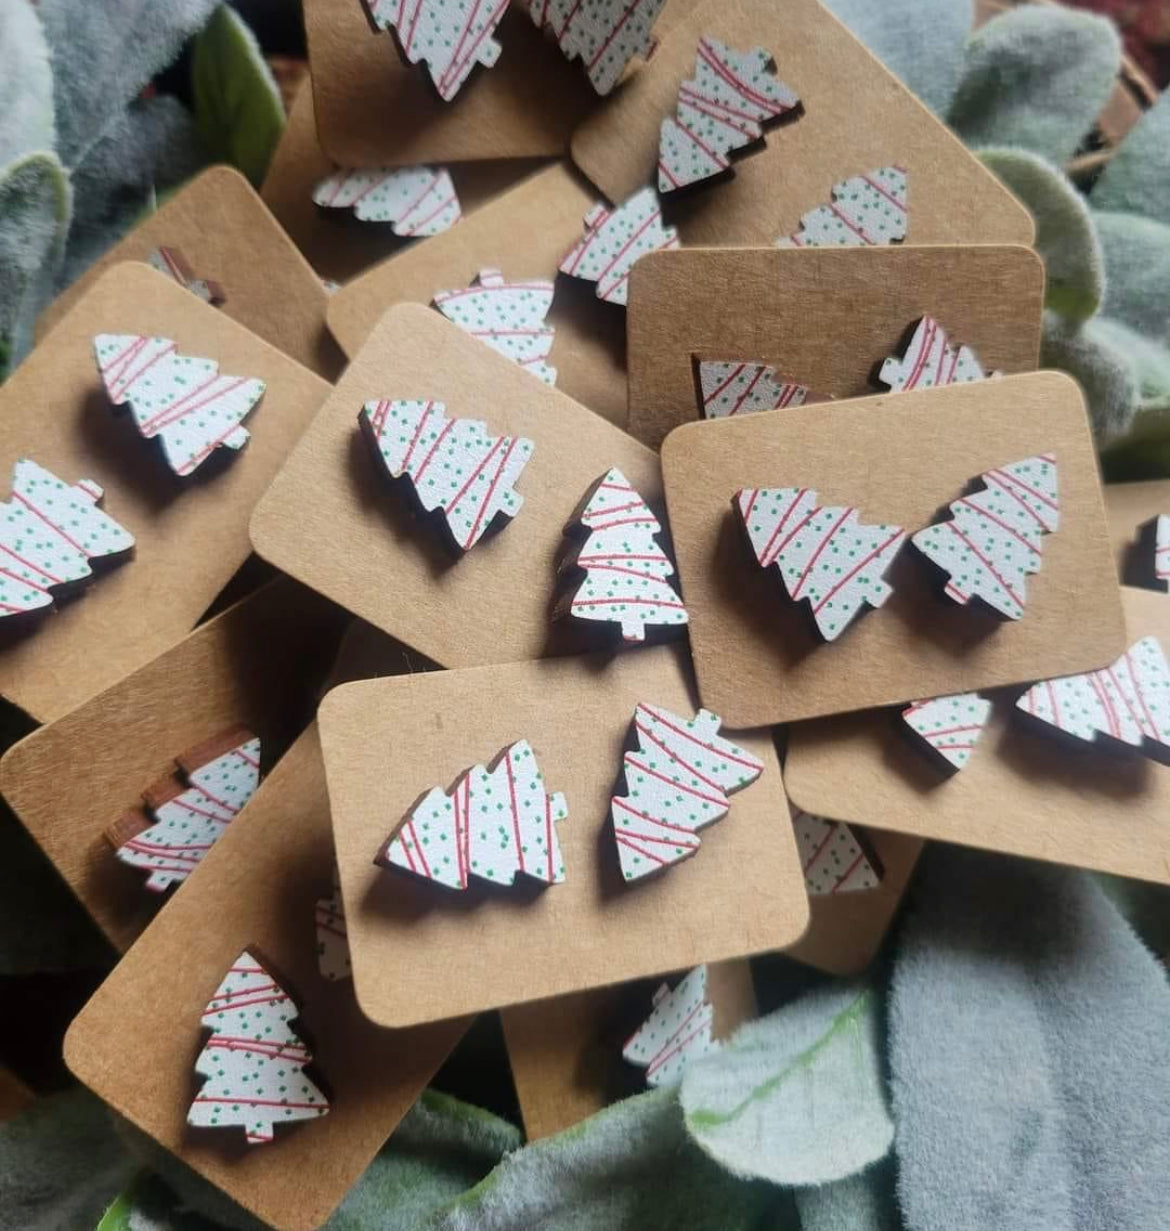 Christmas Tree Snack Earrings